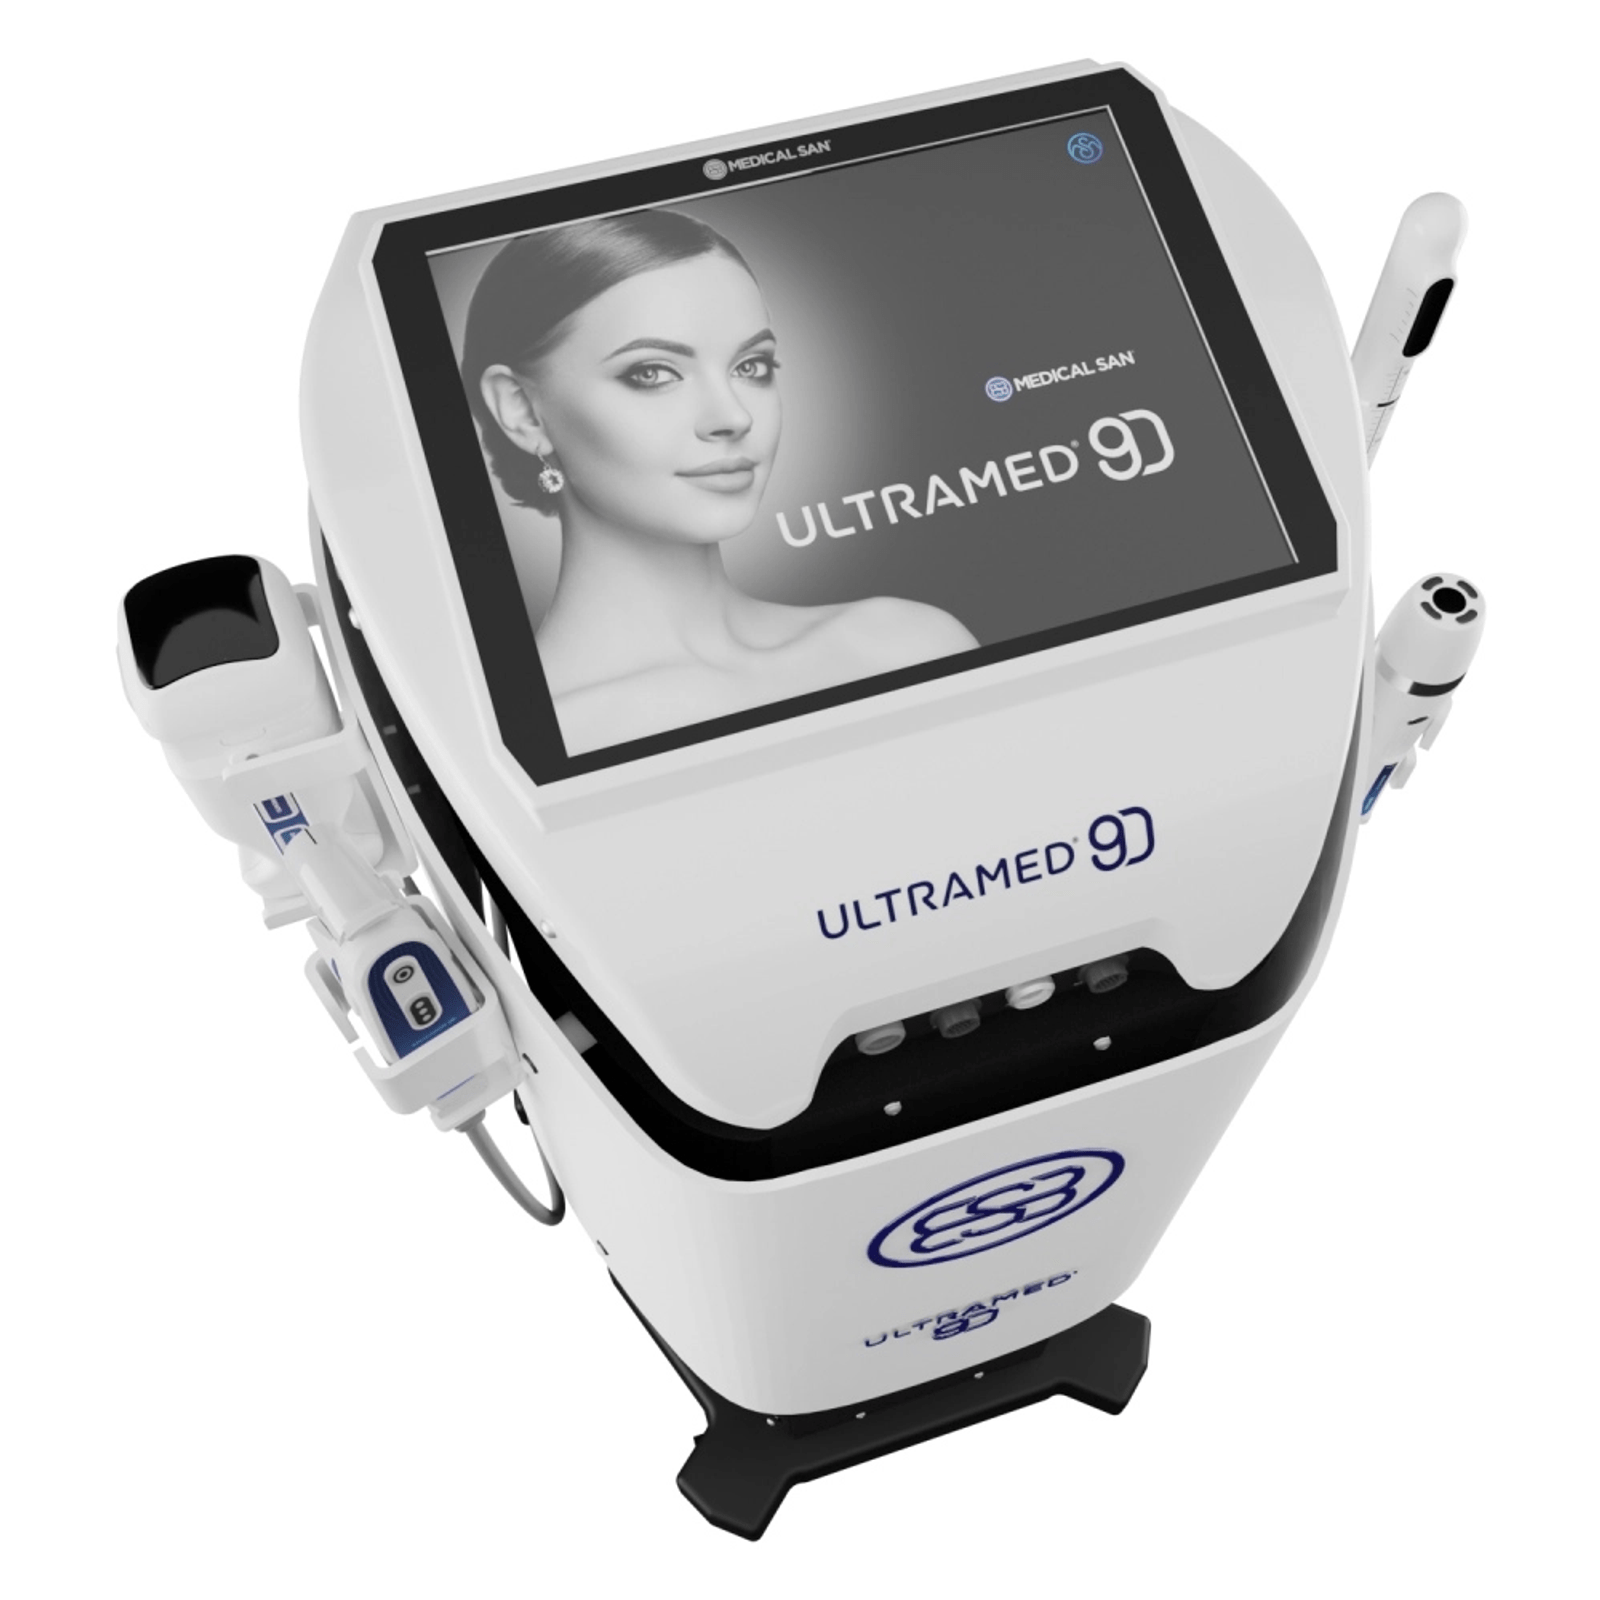 Ultramed 9D - Ultrassom Microfocado e Macrofocado Full - Medical San - Imagem 2